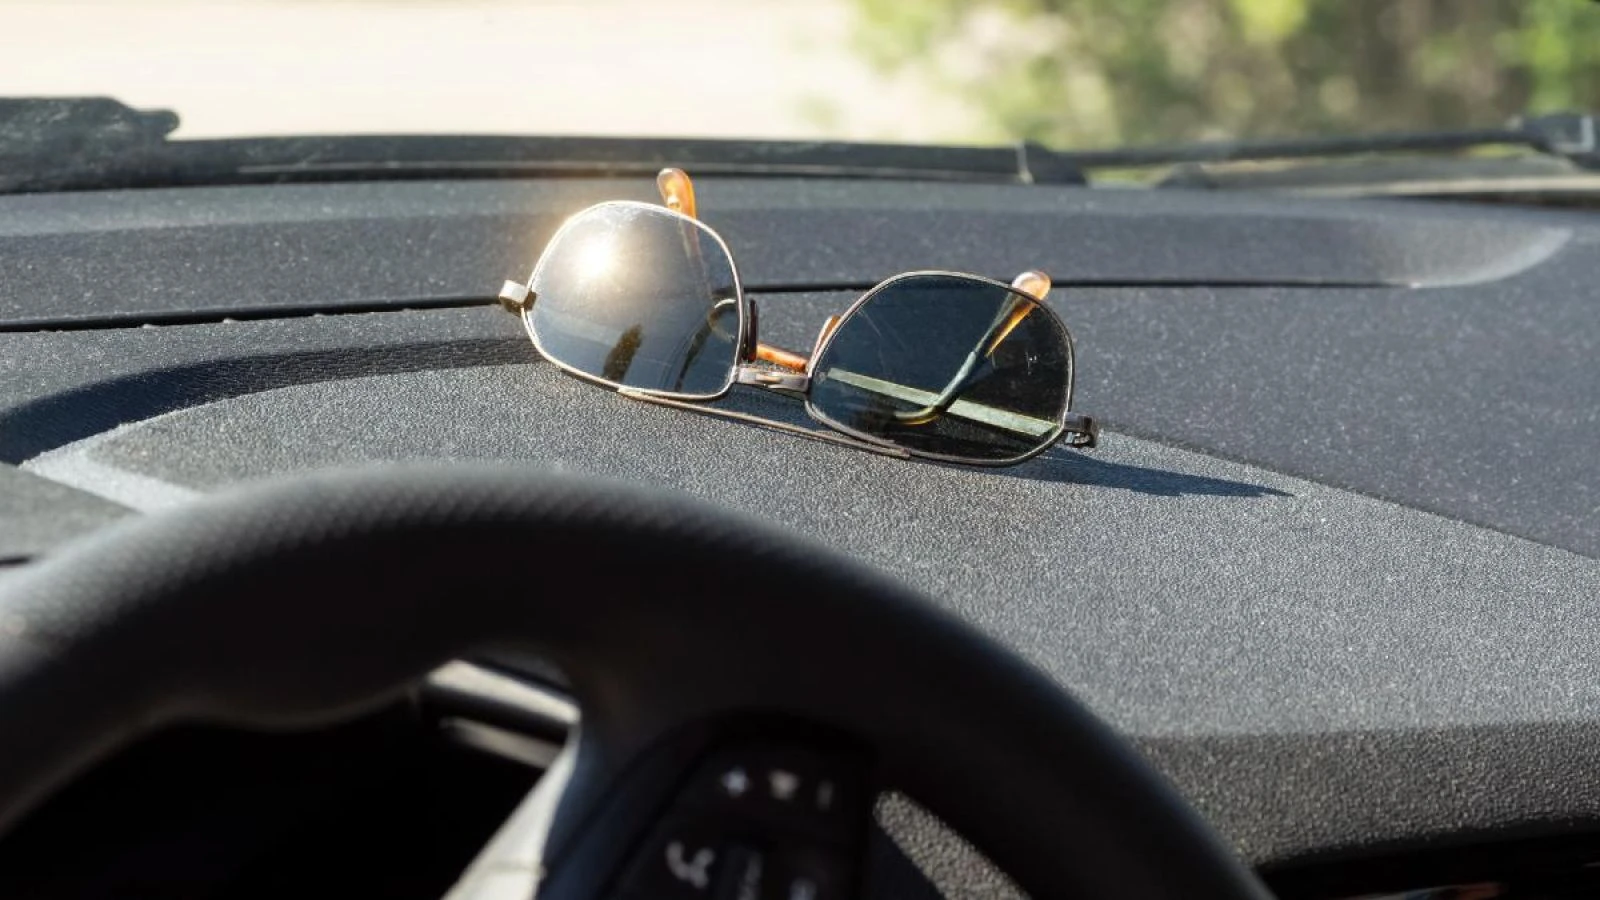 Mắt kính râm để trong xe thời gian dài, phản xạ từ ánh nắng có thể ảnh hưởng đến một số chi tiết trong khoang nội thất ô tô